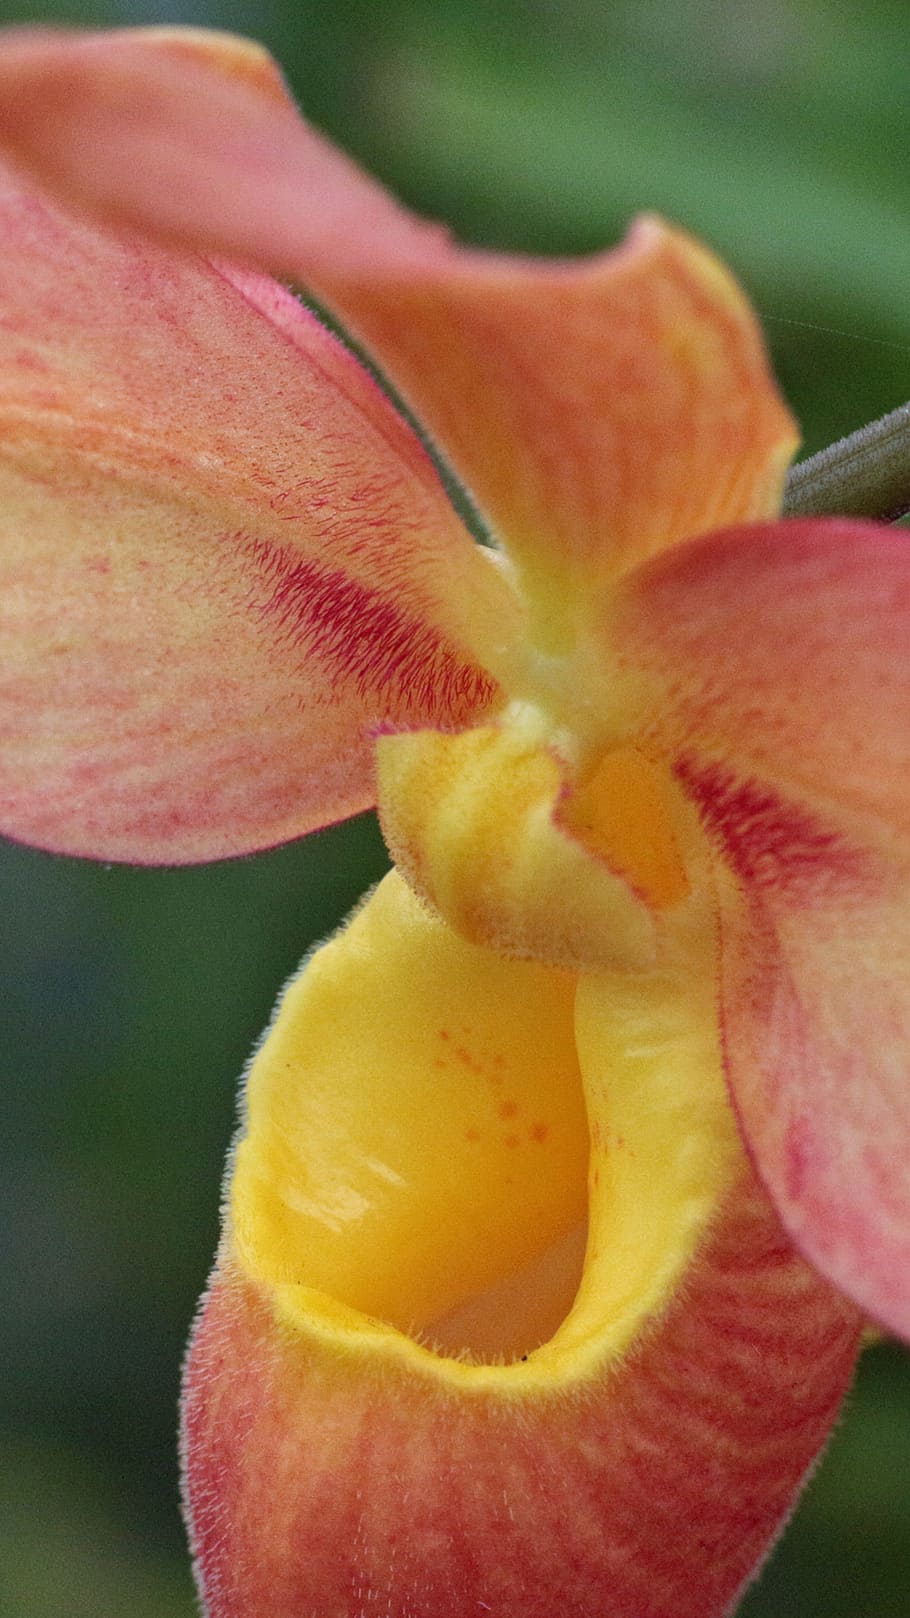 naranja, amarillo, orquídea phragmipedium, primer plano, imagen tomada, tiro, zapatilla de dama, cypripedioideae, phragmipaphium, labellum